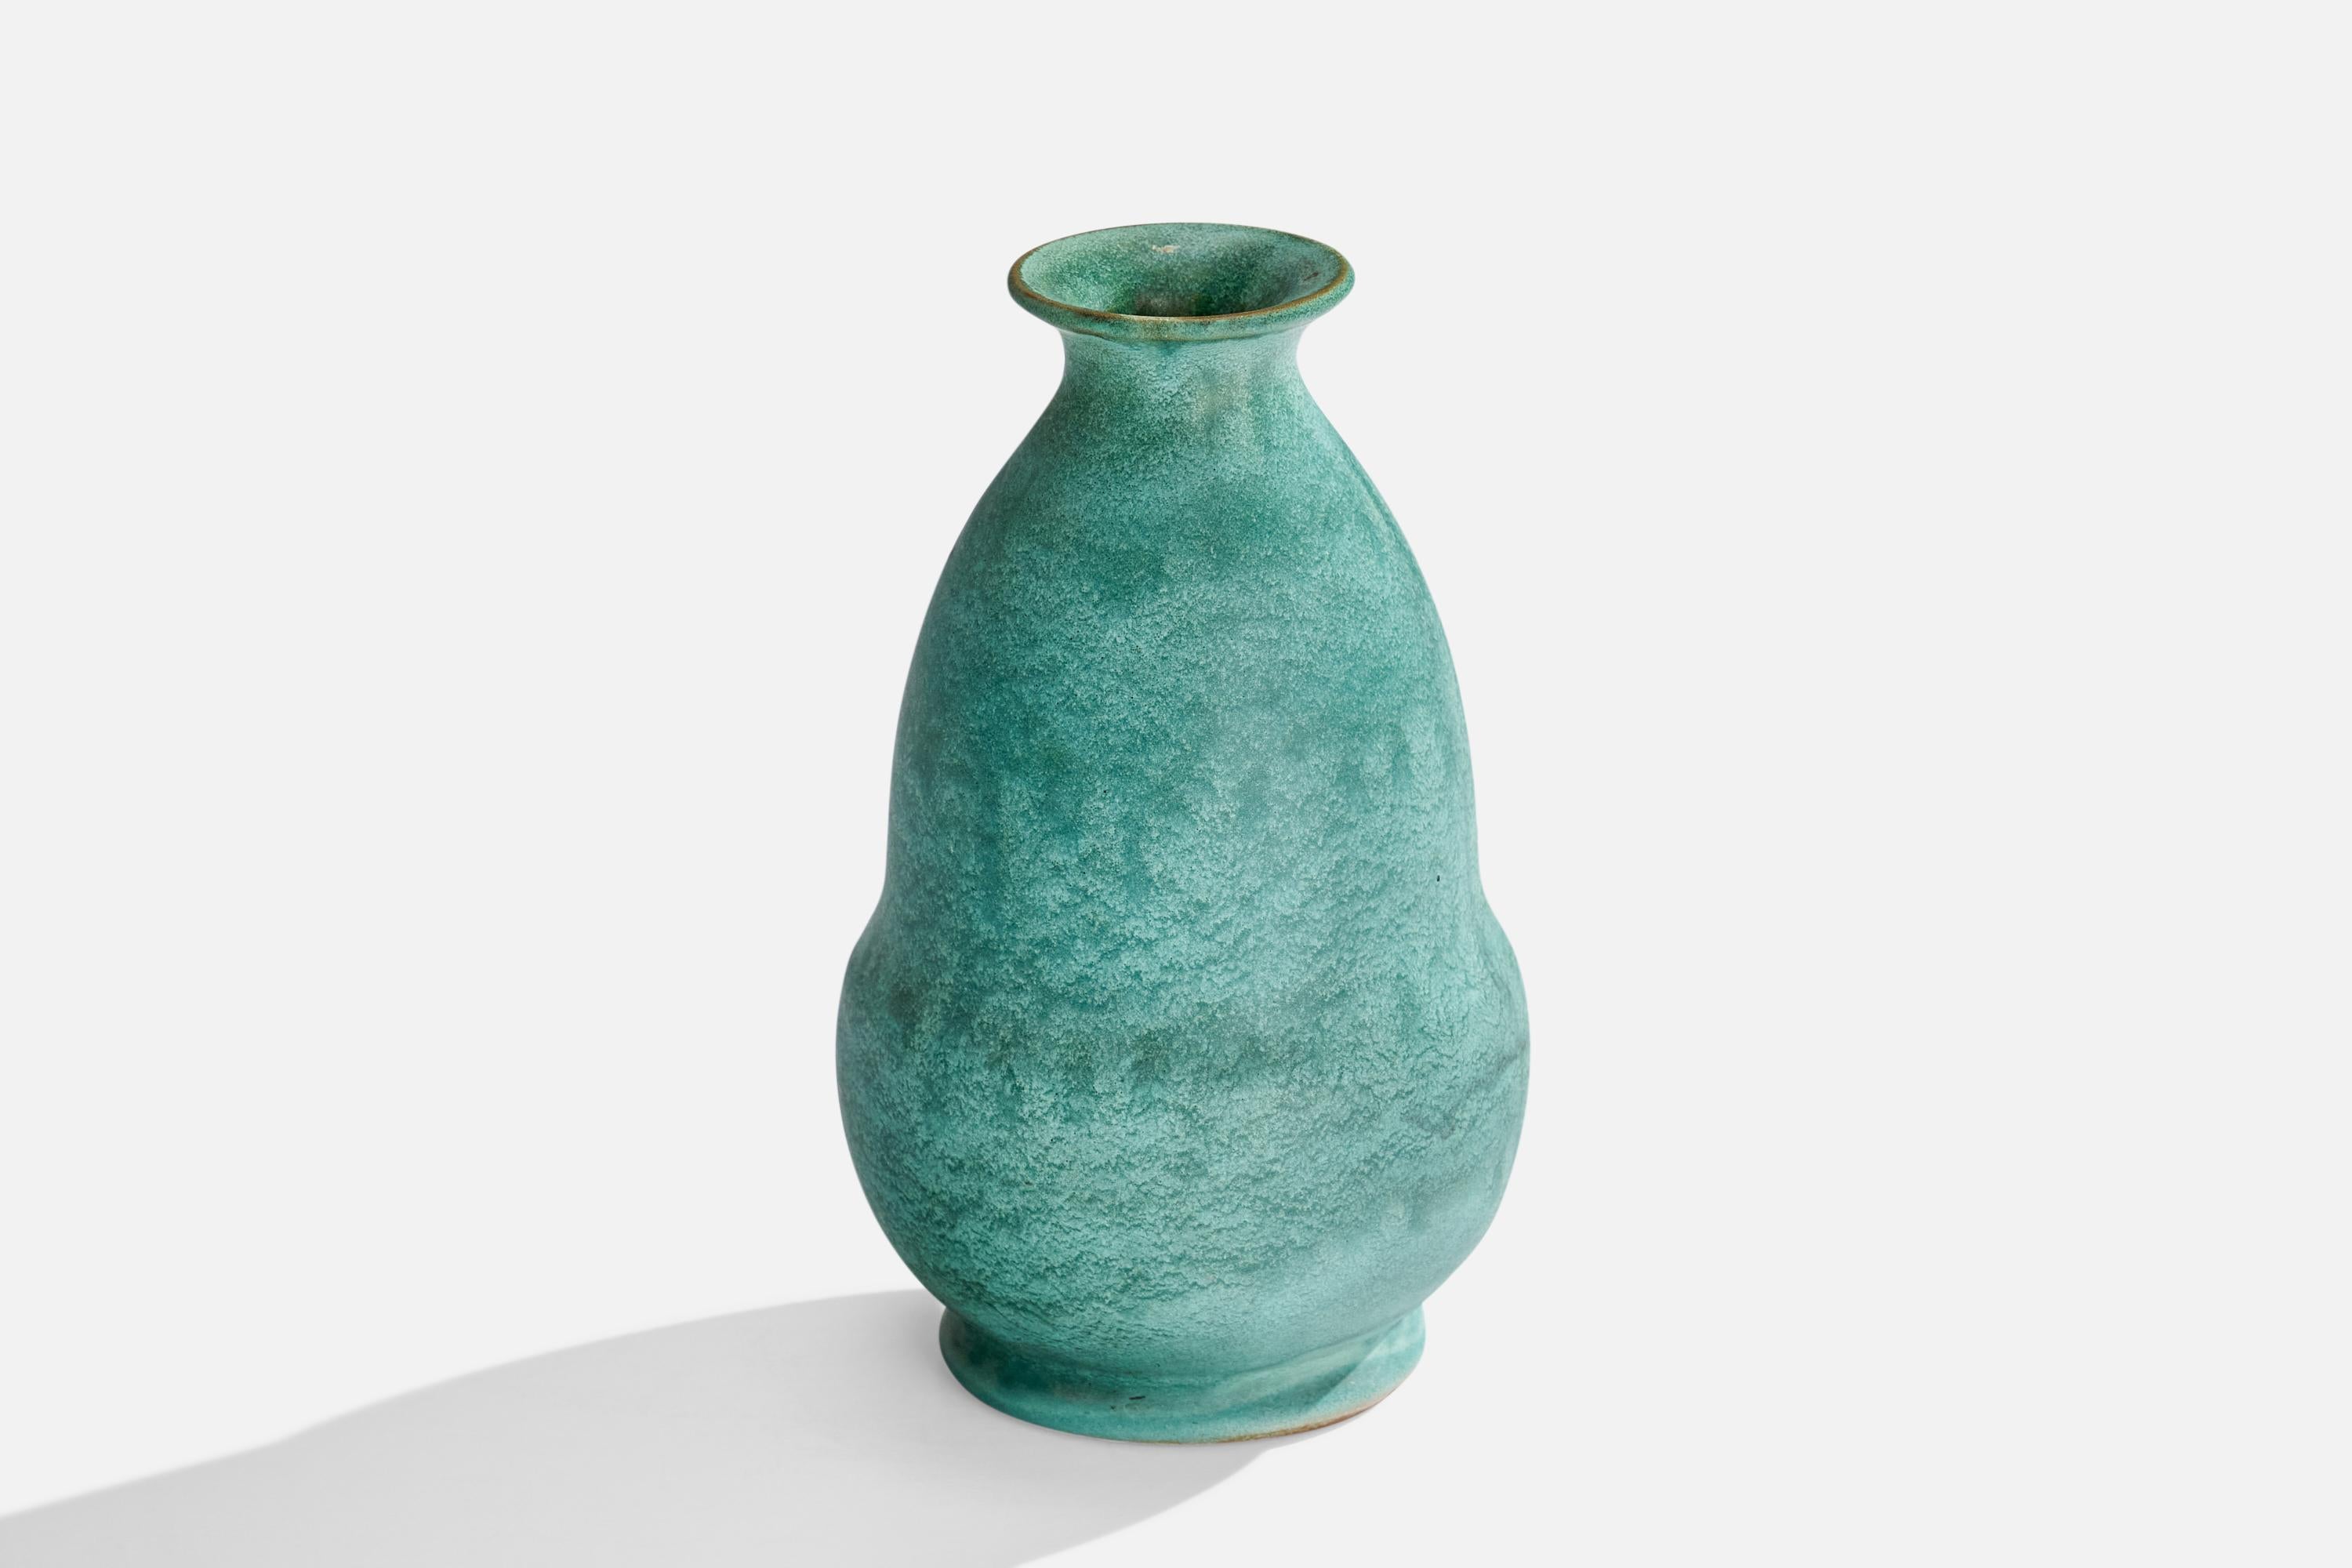 Vase en faïence bleu-vert conçu et produit par Upsala Ekeby, Suède, c. 1930.